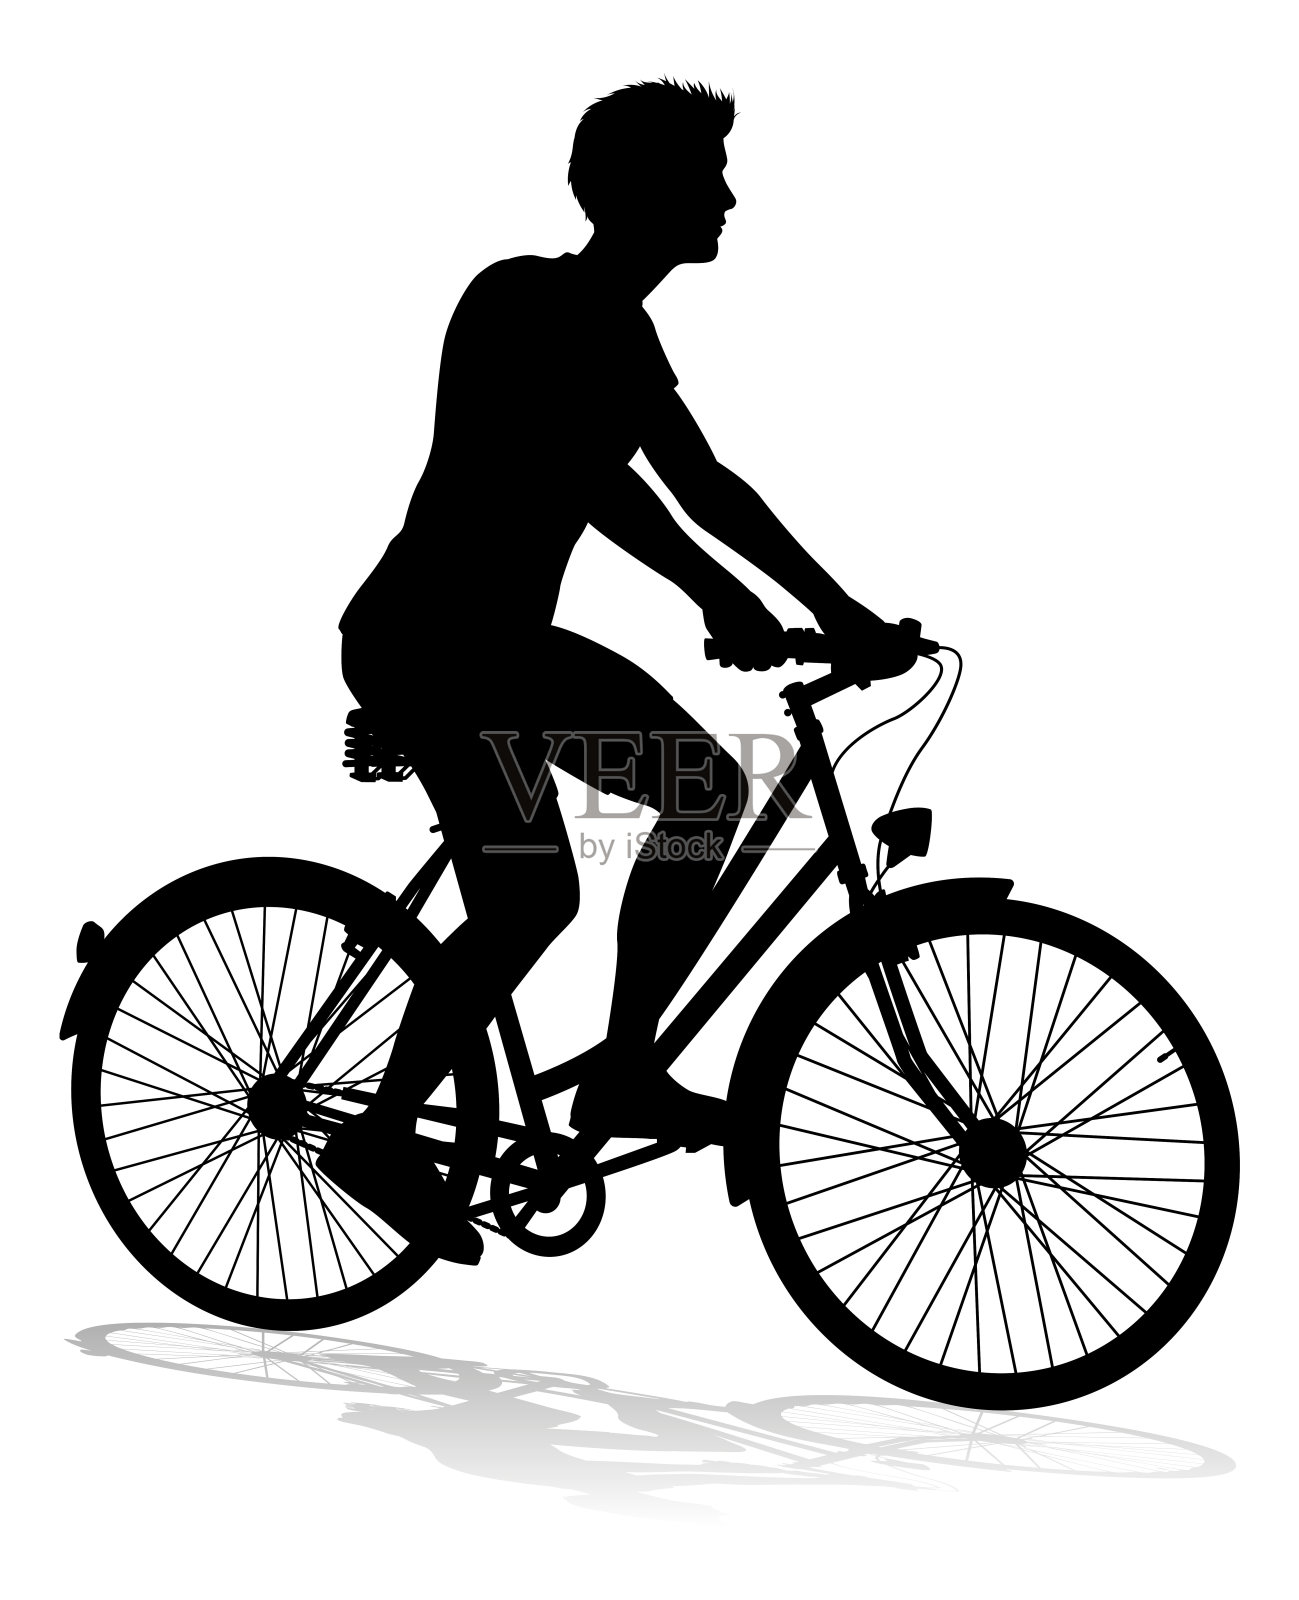 自行车自行车骑自行车剪影设计元素图片